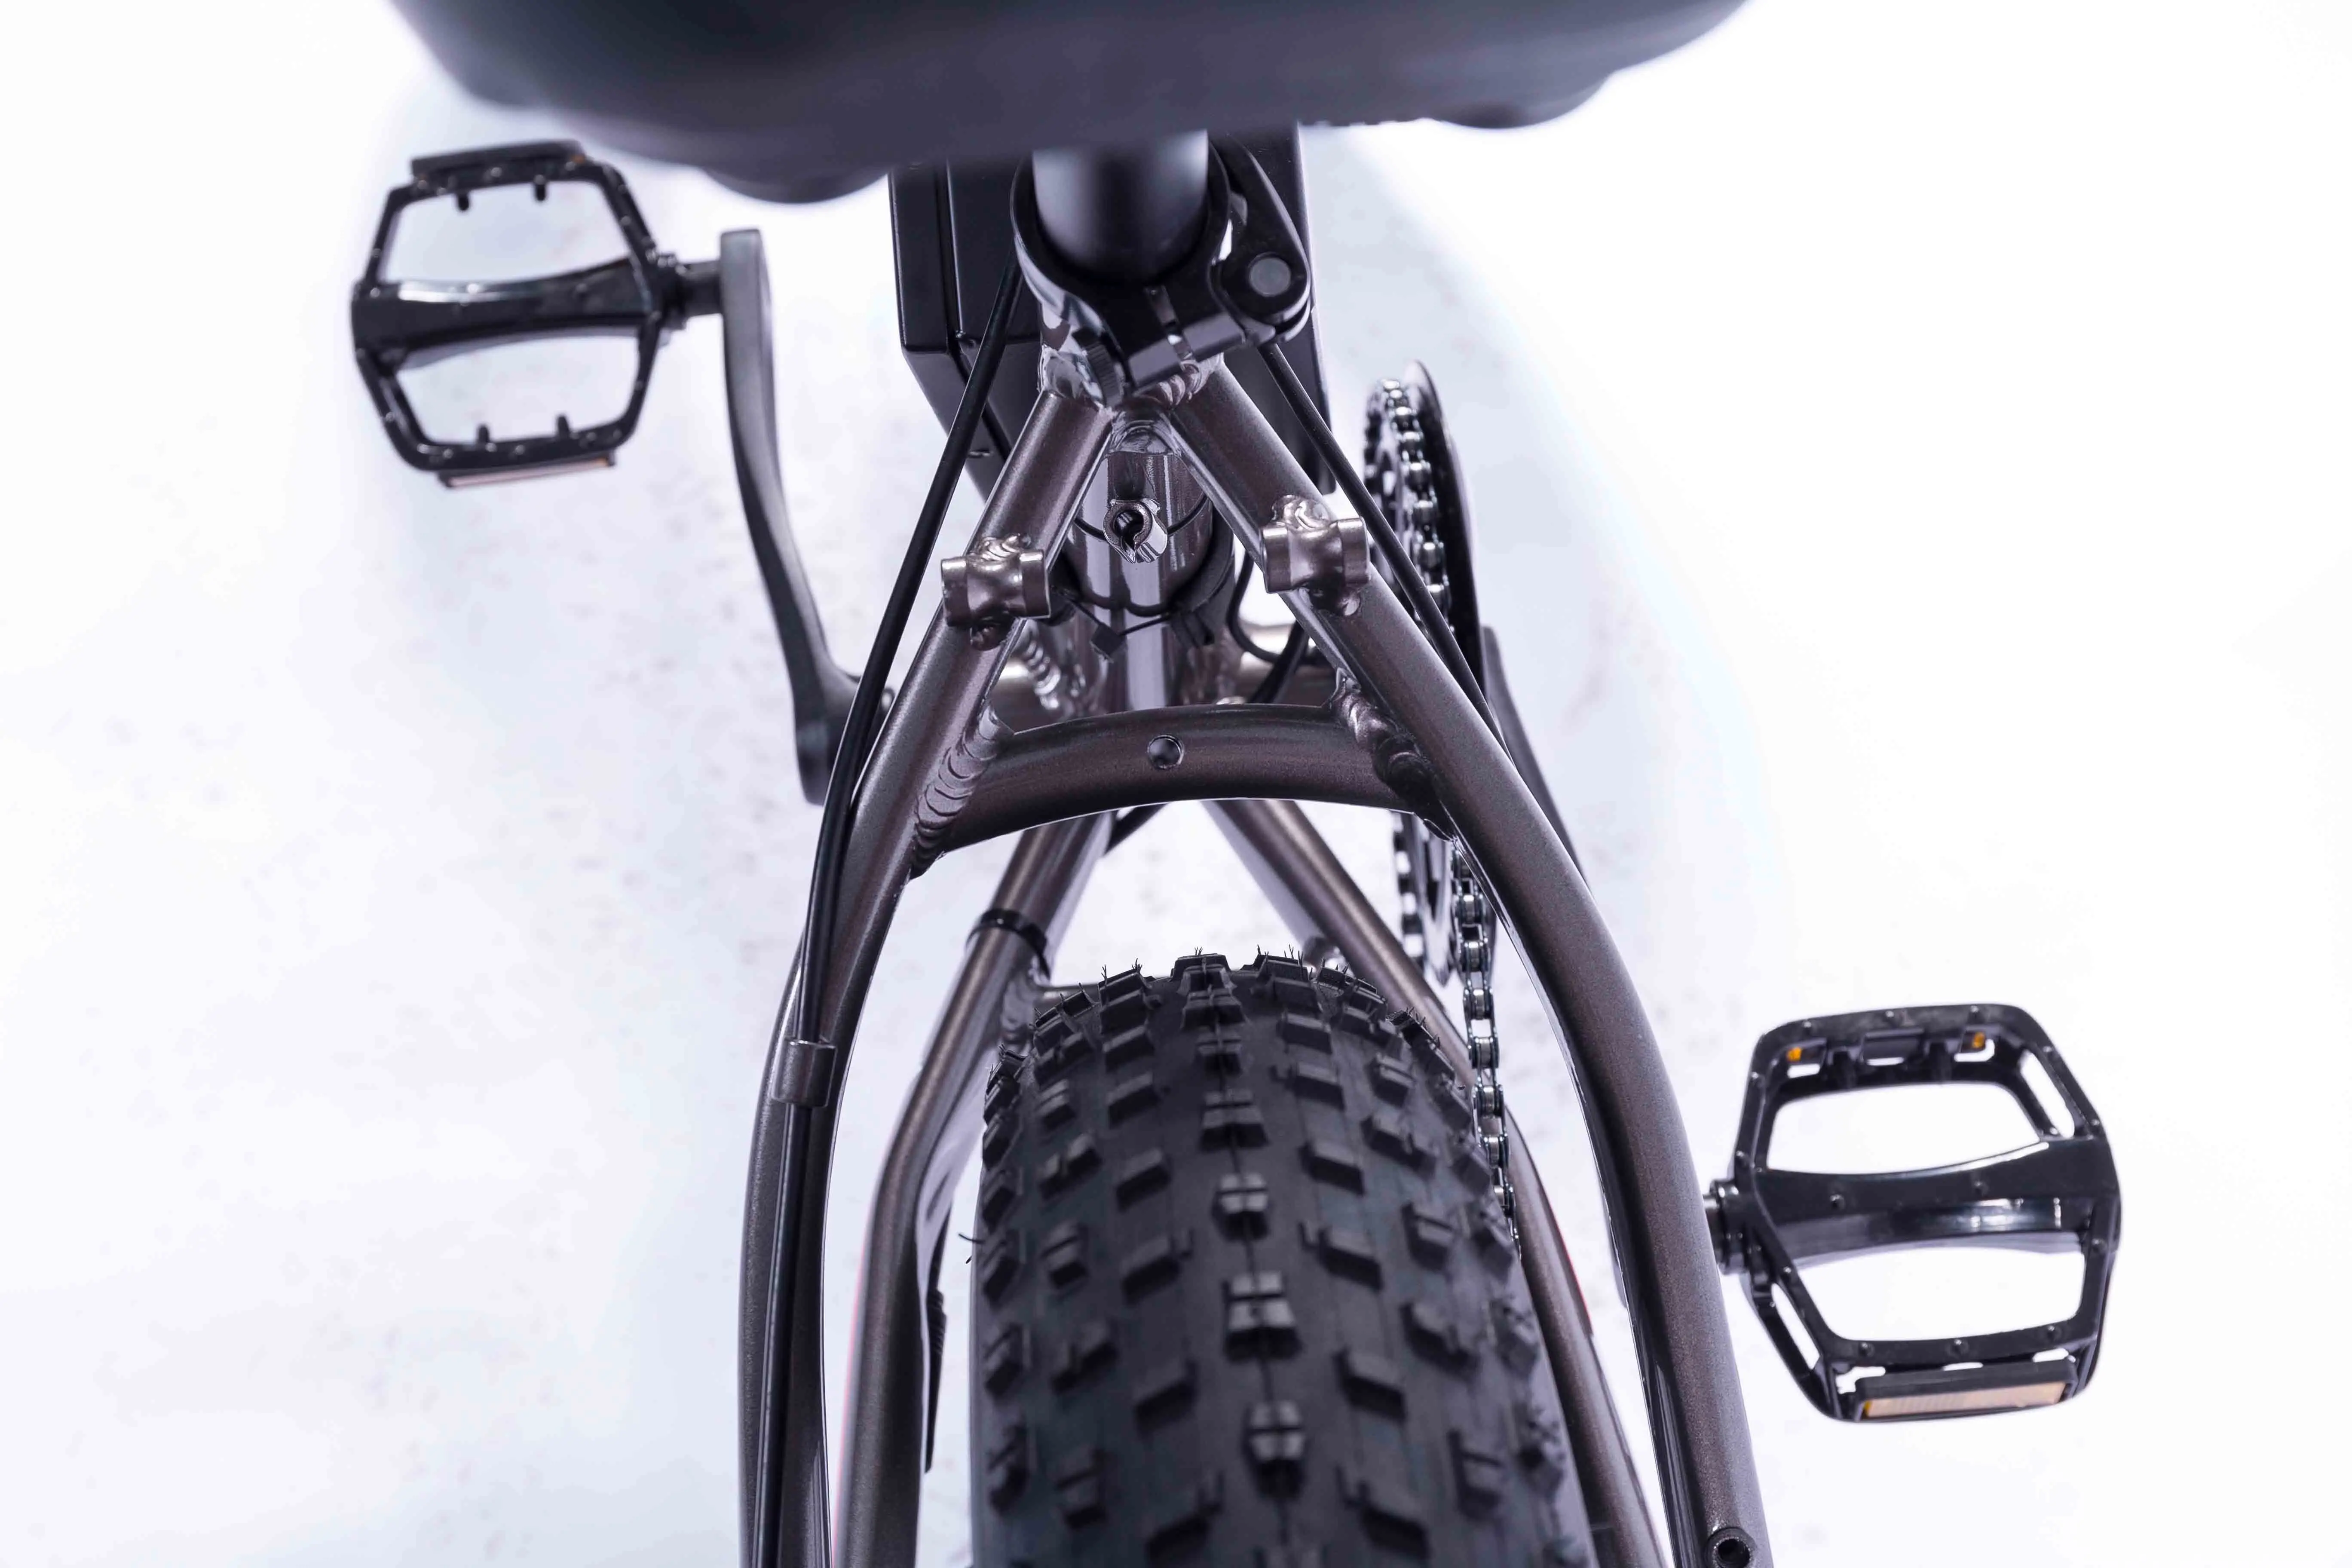 Винтаж велосипед электрический Gps-02001ea с толстыми покрышками для спорта, для катания на велосипеде, 350w 7-Скорость Шестерни е-байка 36В Батарея с макс Скорость до 25 км/ч для велосипеда со звездами